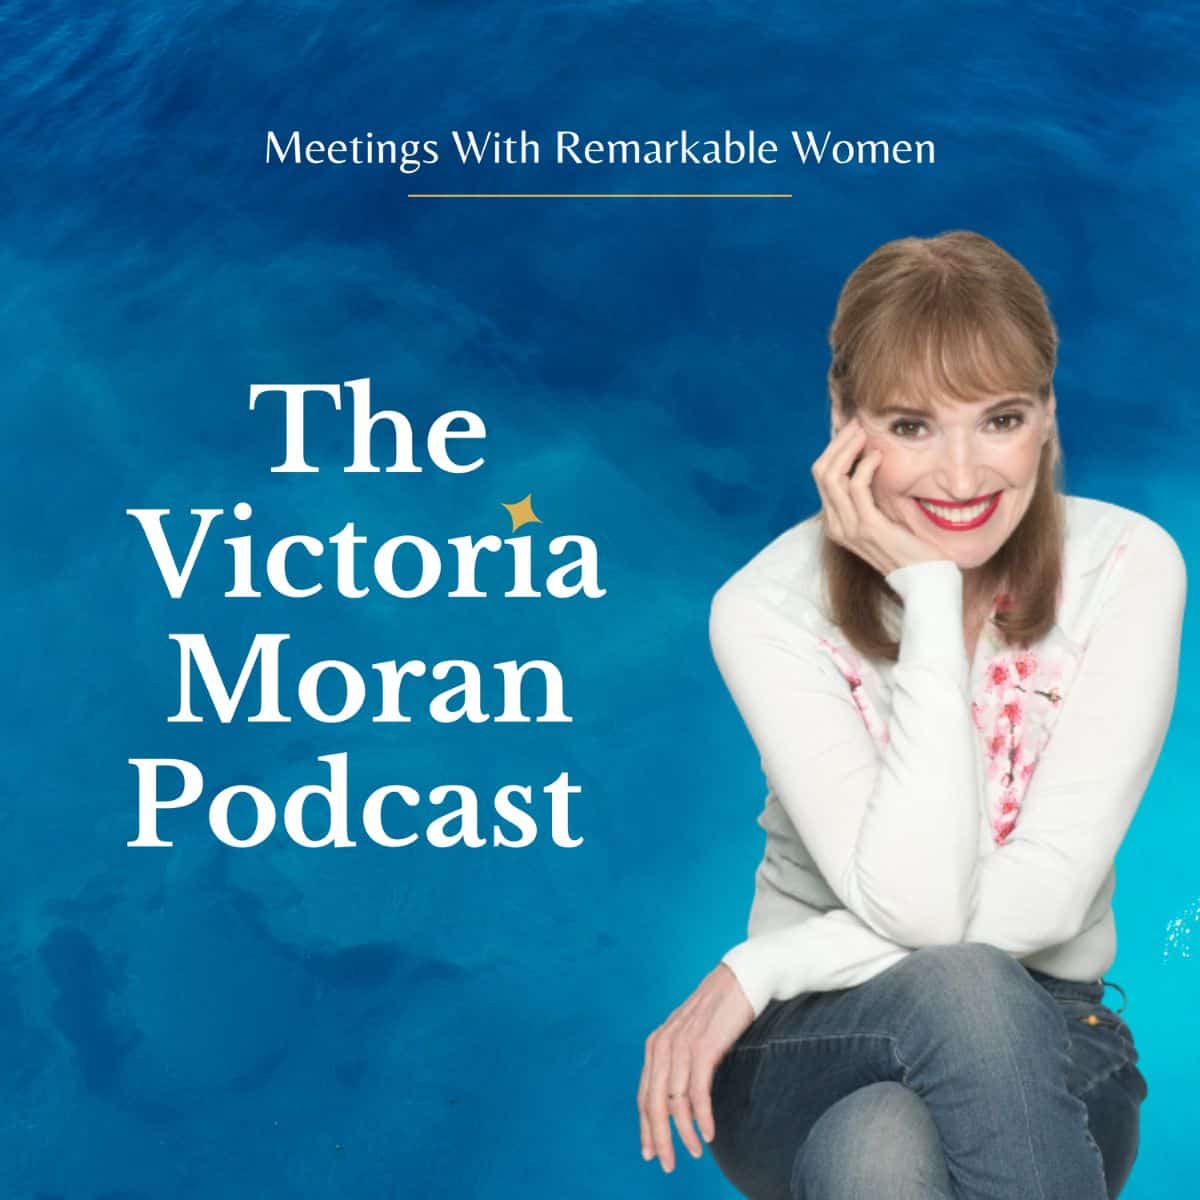 The Victoria Moran Podcast cover art.